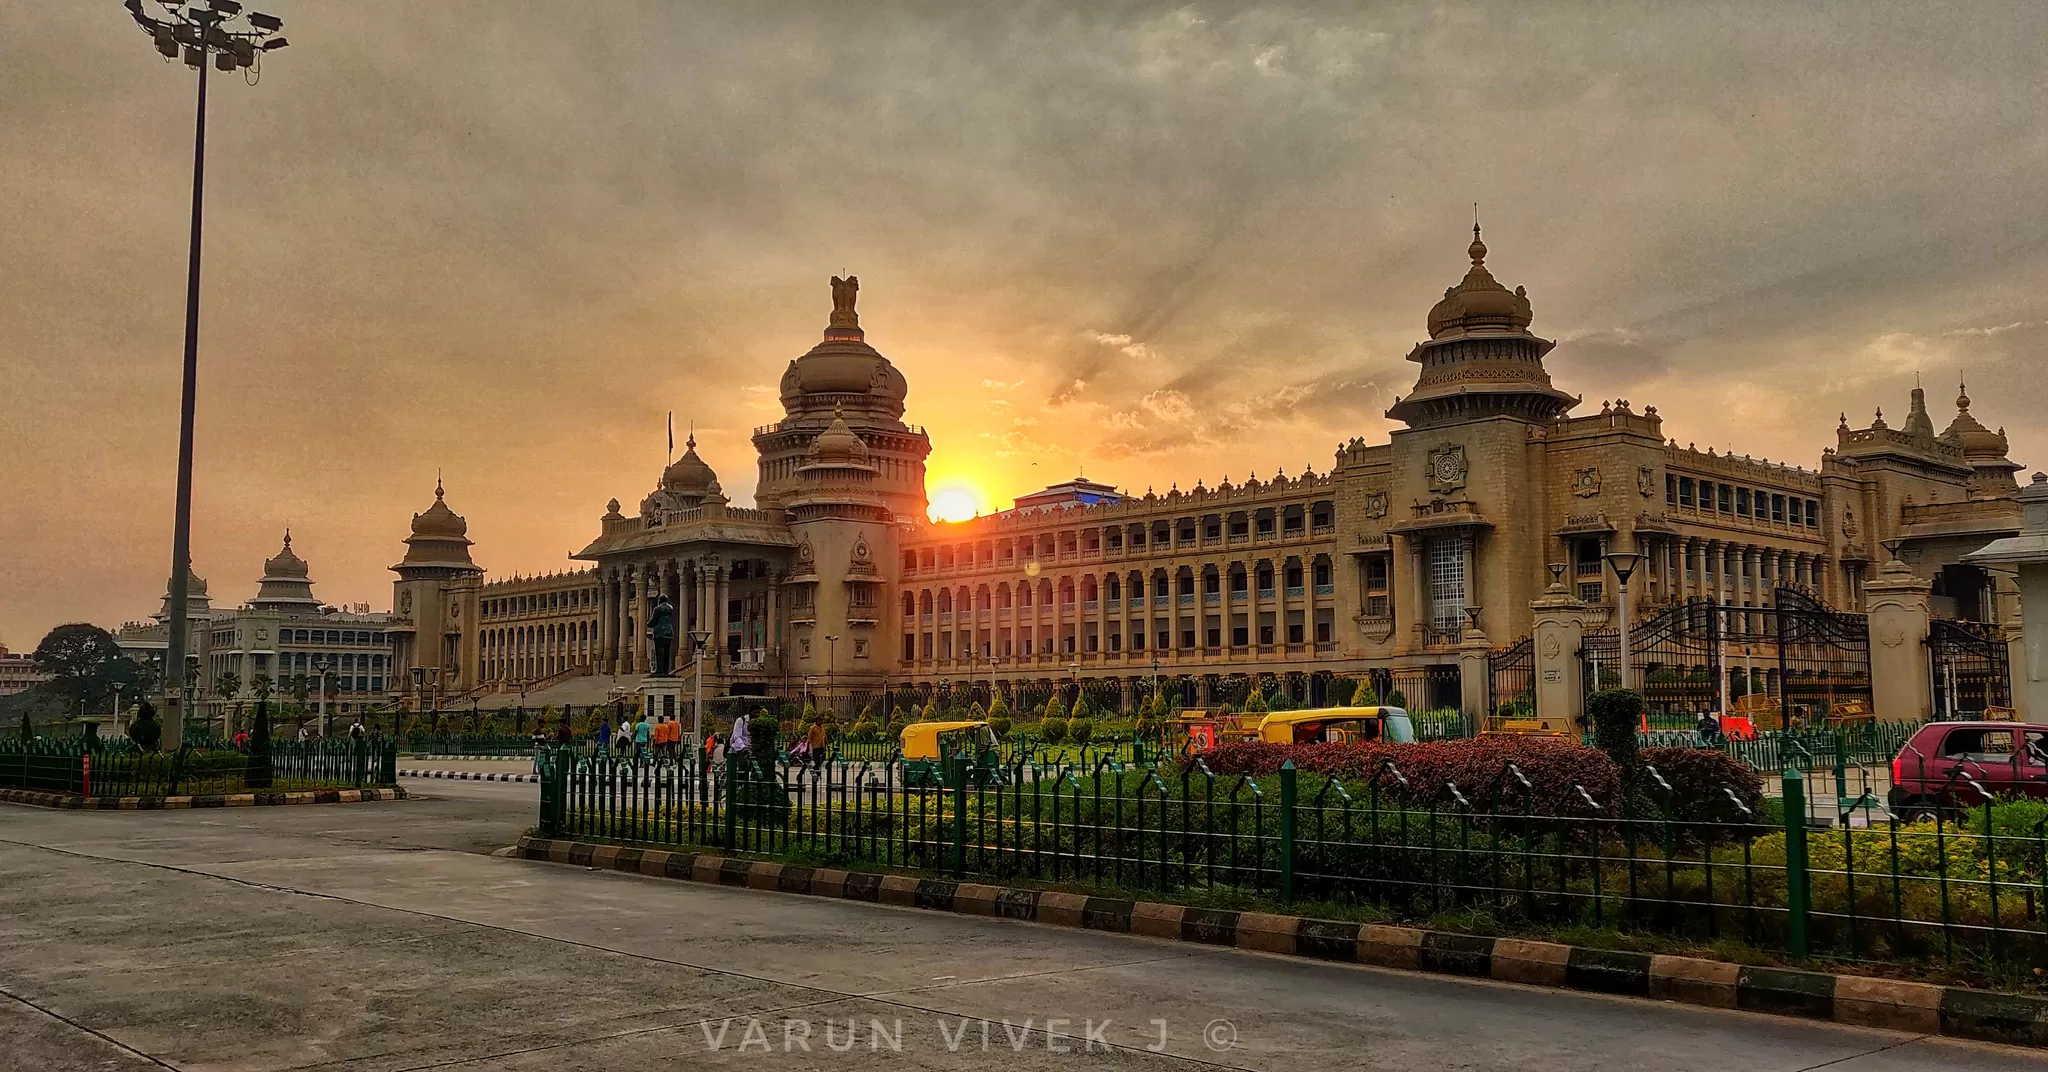 Cover Image of Varun Vivek J